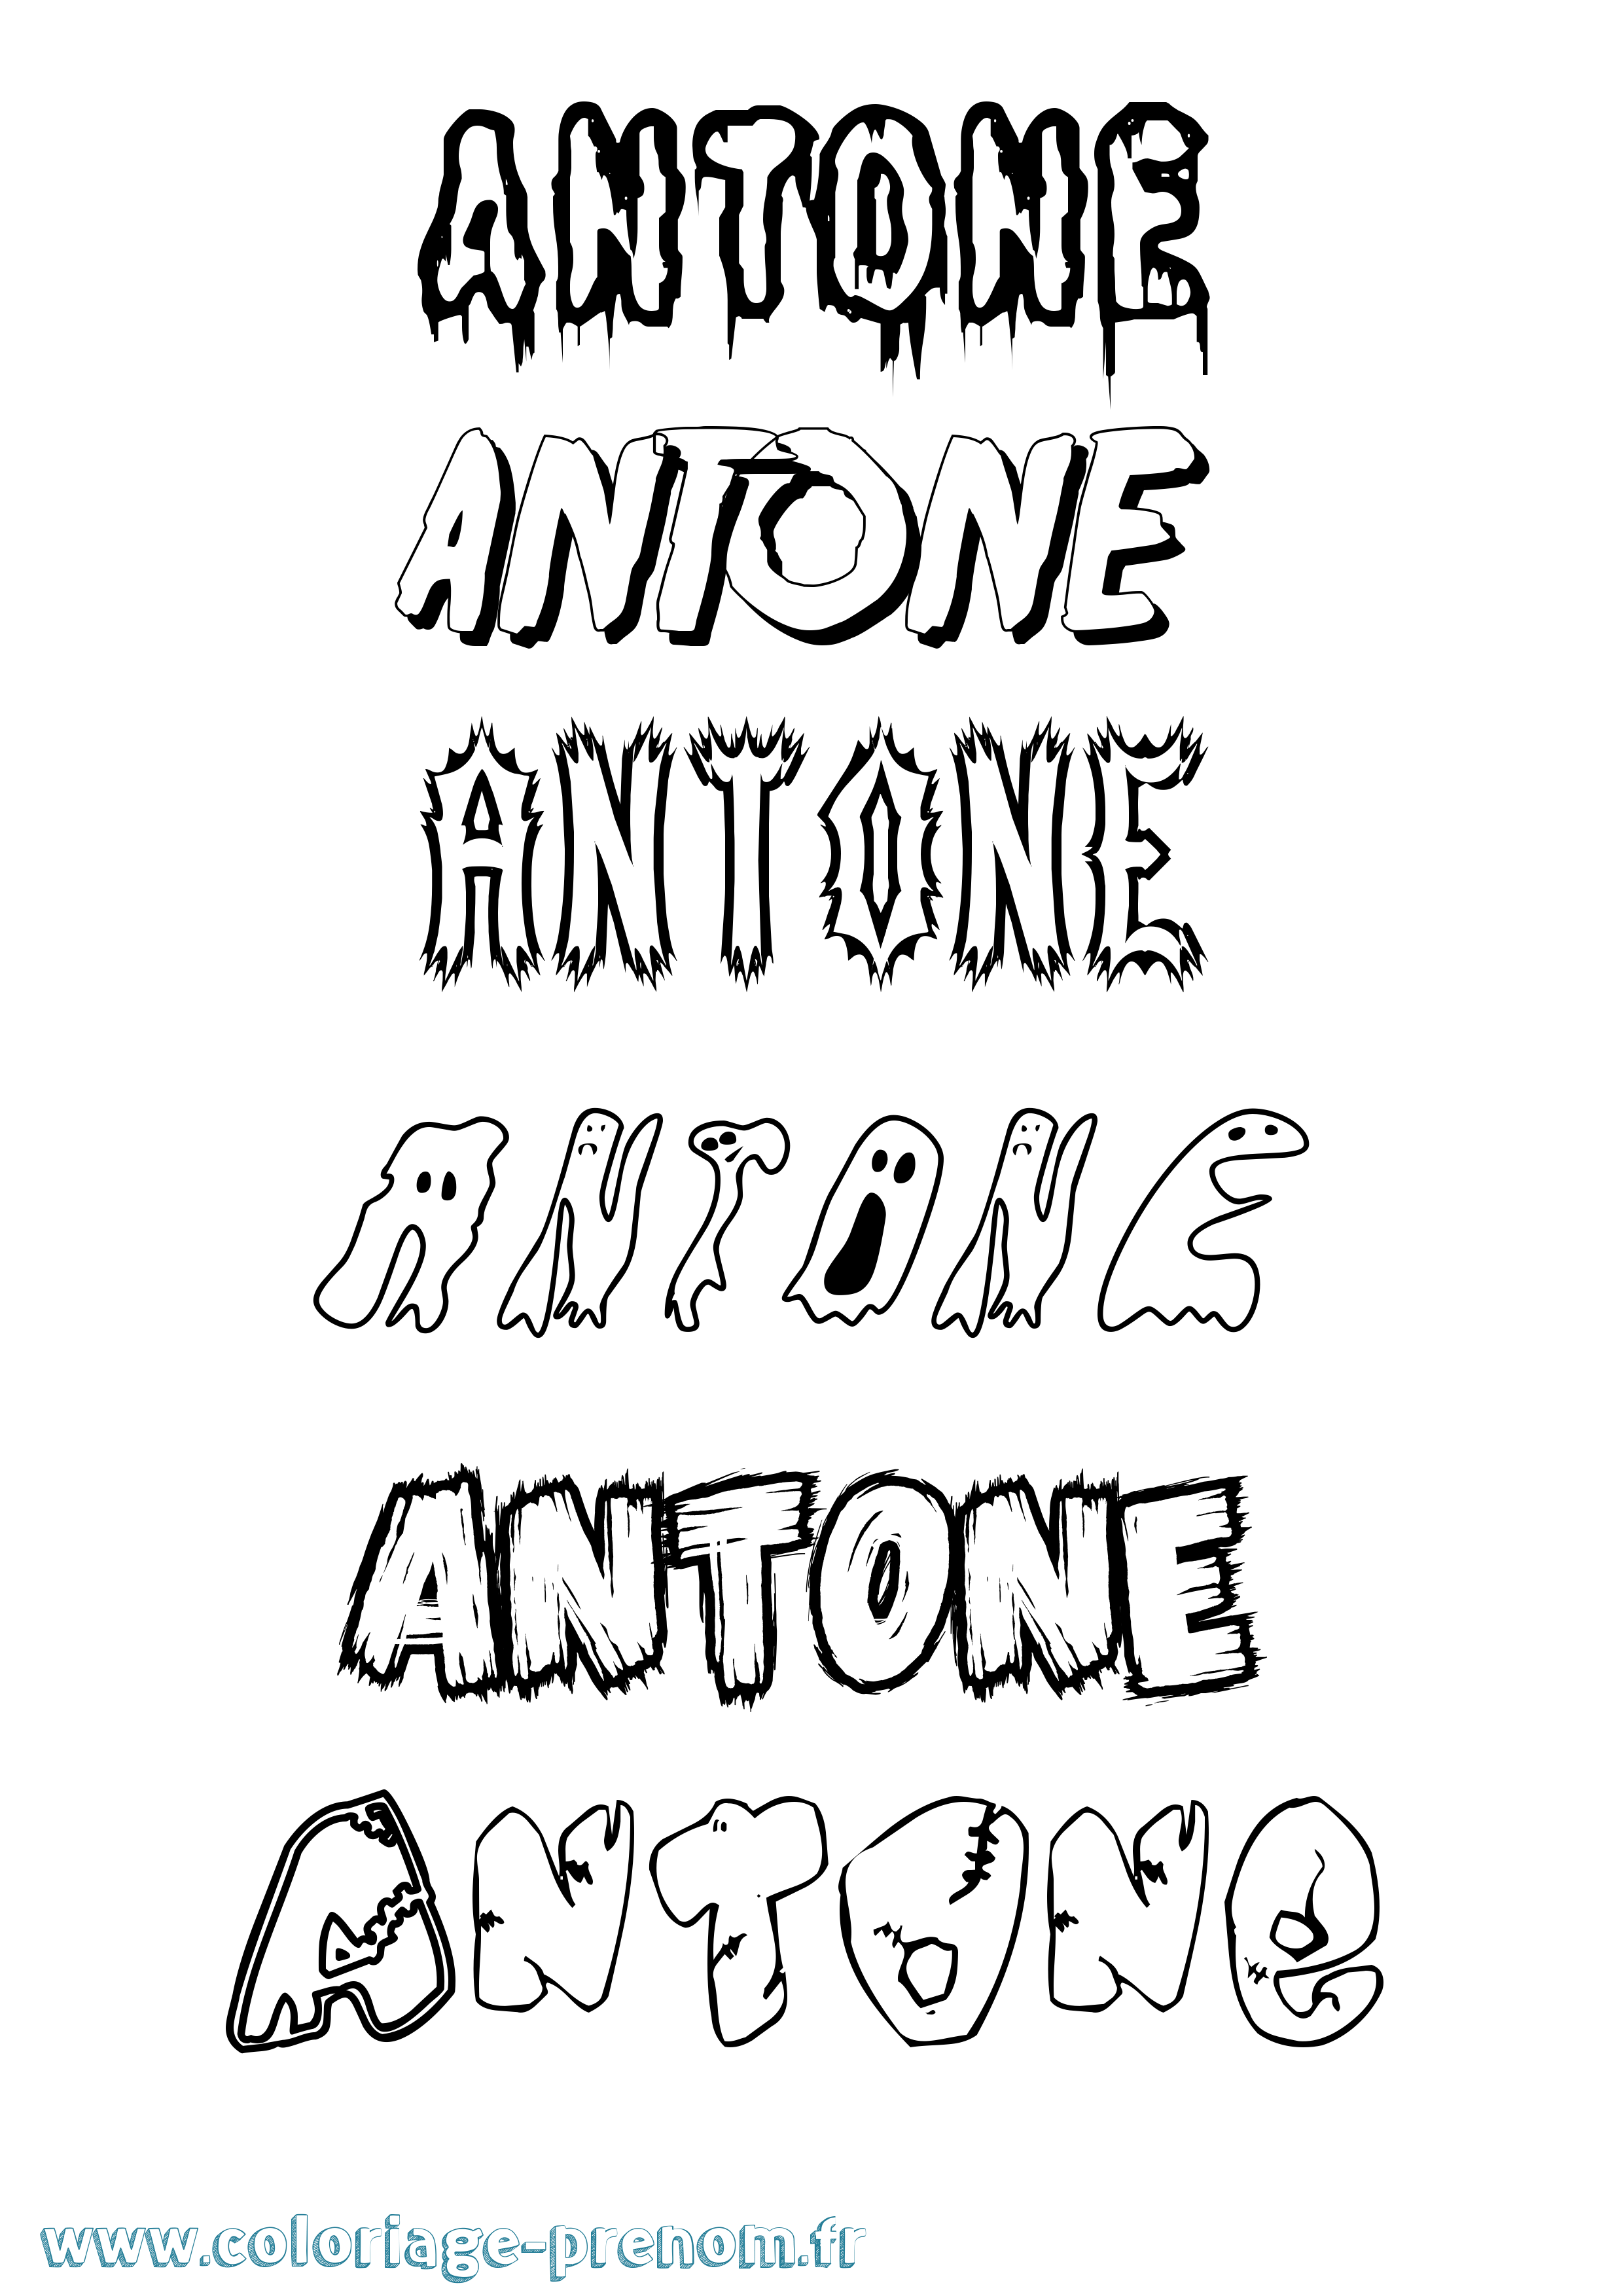 Coloriage prénom Antone Frisson